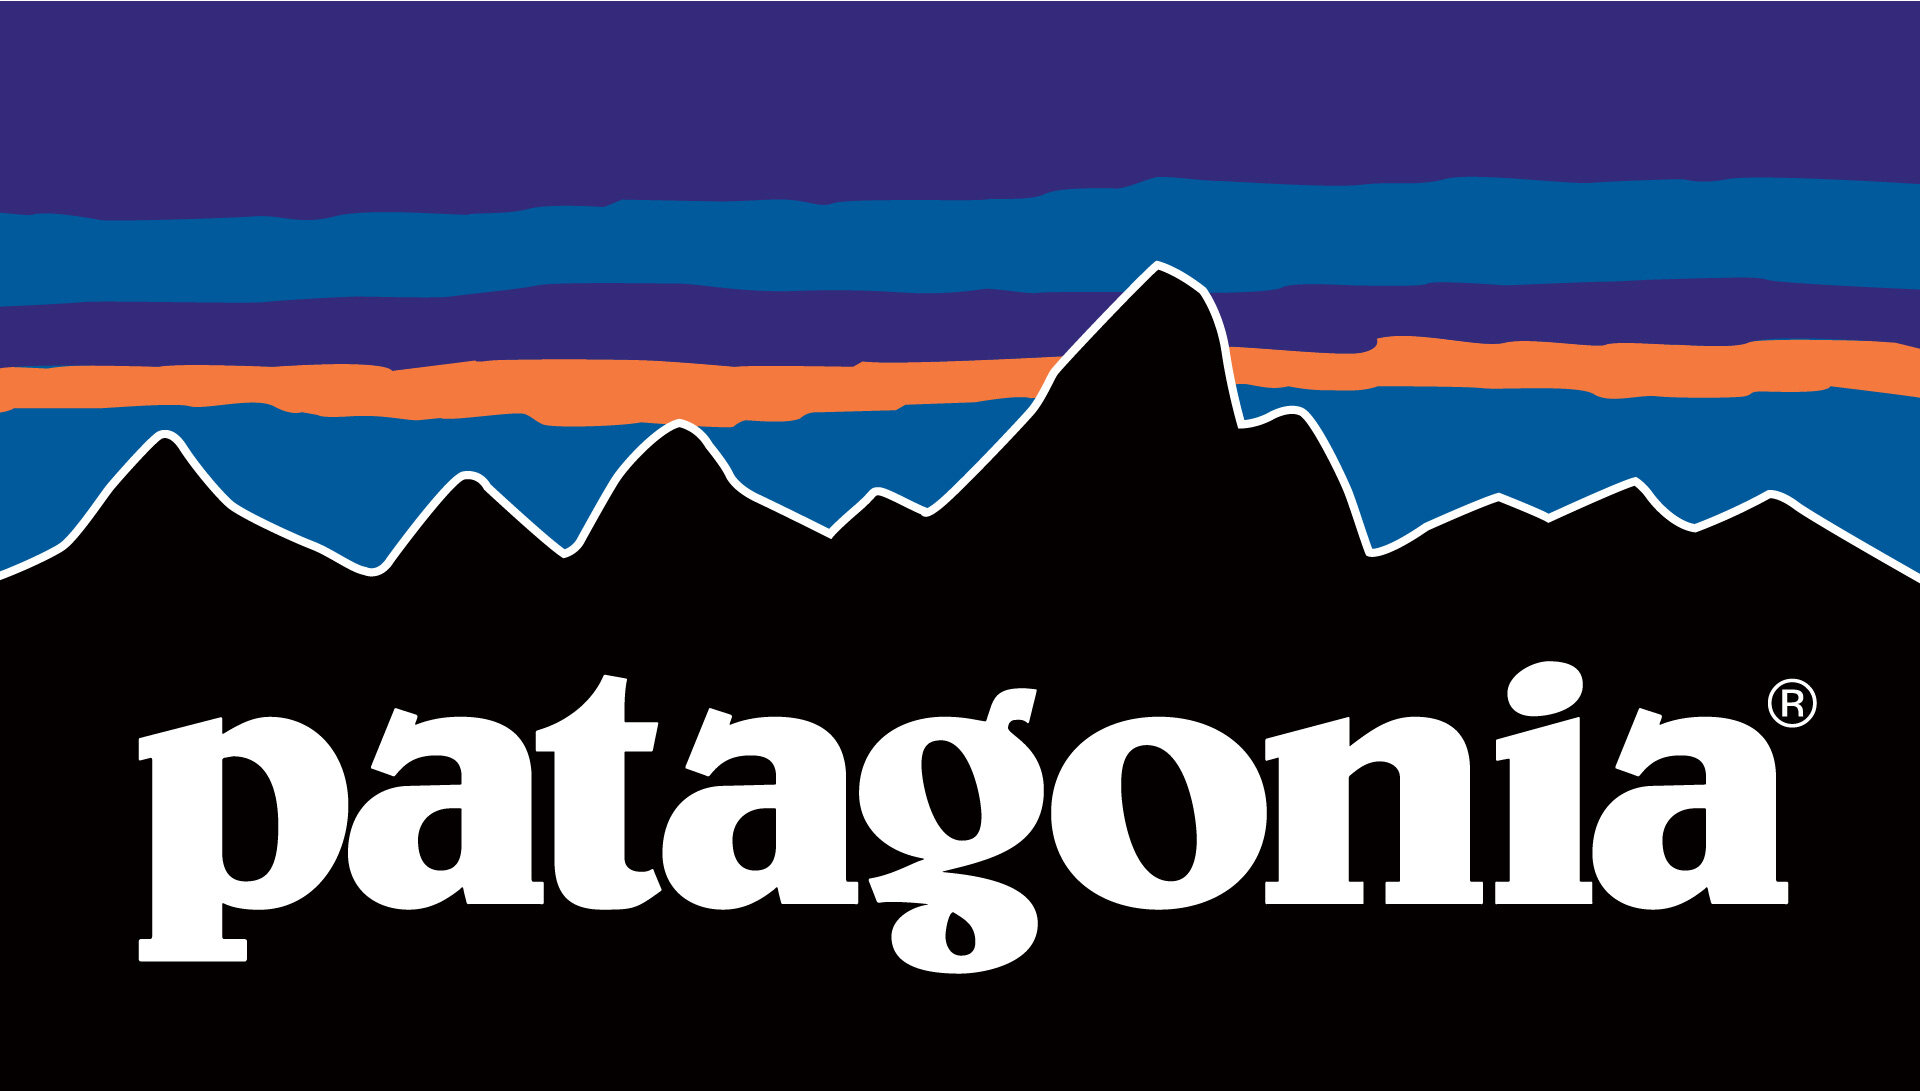 patagonia-logo.jpg